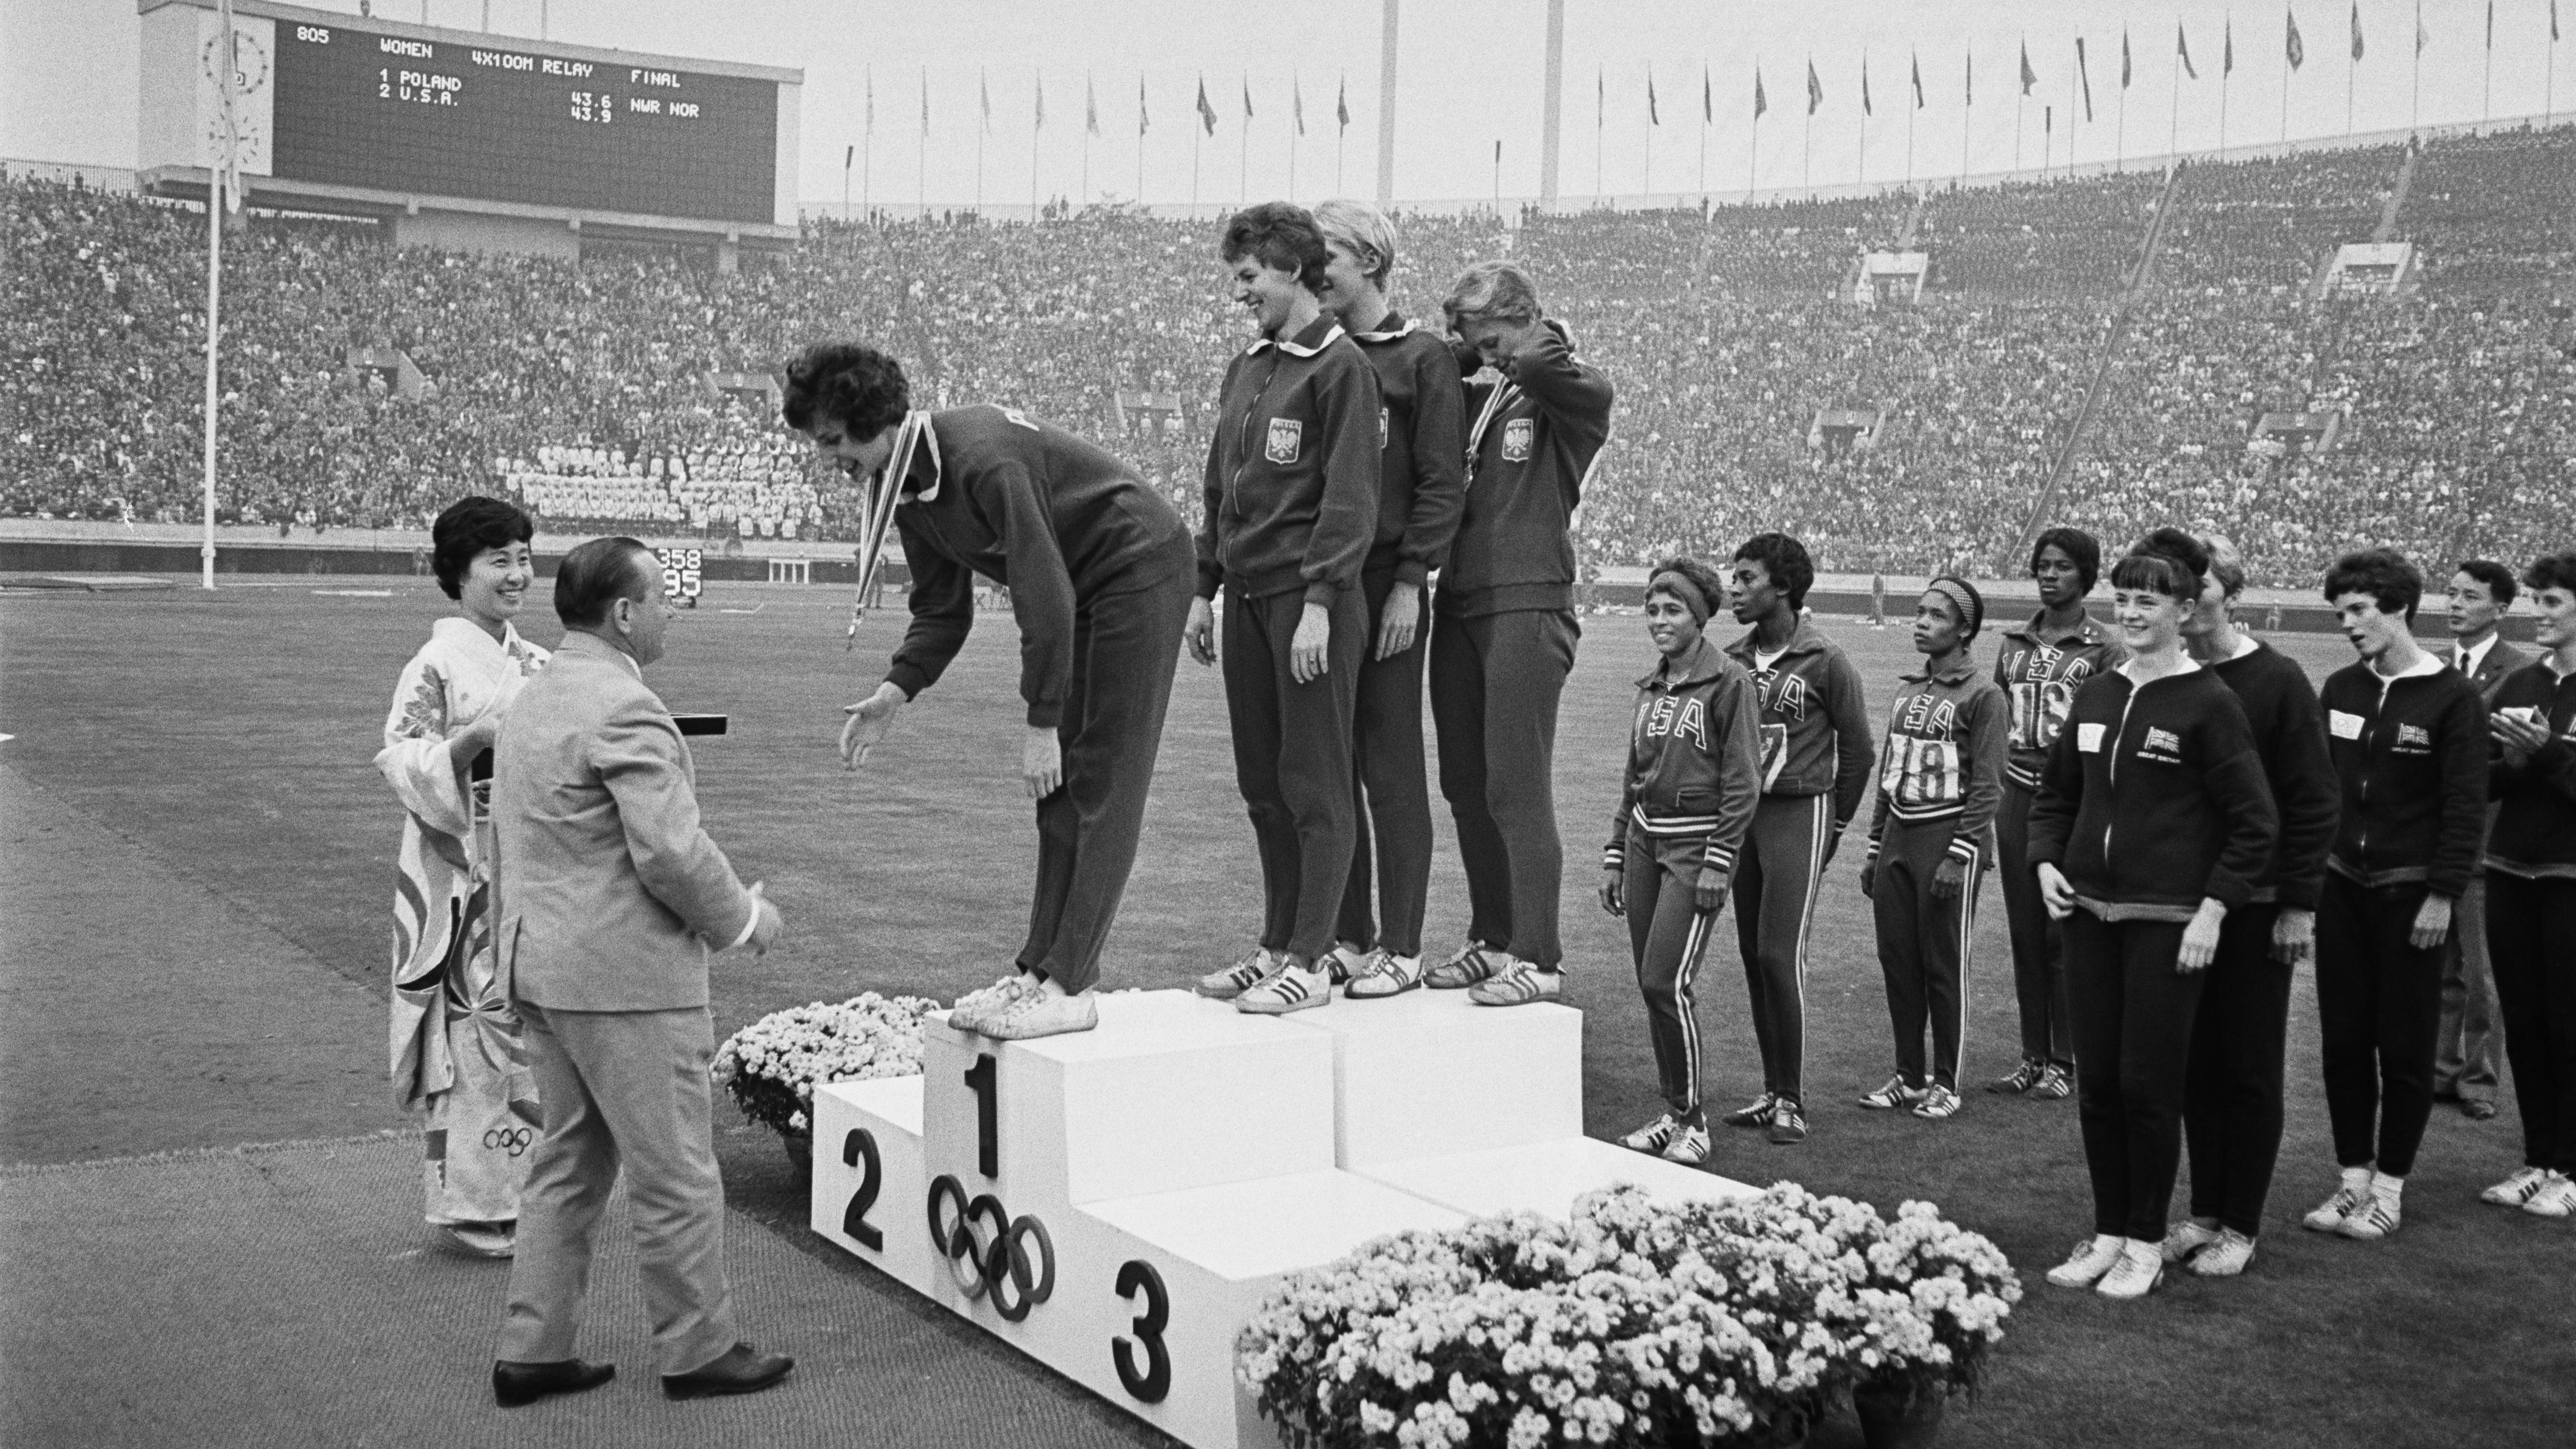 Puolan joukkueen Teresa Cieply, Irena Kirszenstein, Halina Gorecka ja Ewa Klobukowska saivat kultamitalinsa voitettuaan 100 metrin viestin 21. lokakuuta 1964 kesäolympialaisten aikana Kansallisstadionilla Tokiossa.